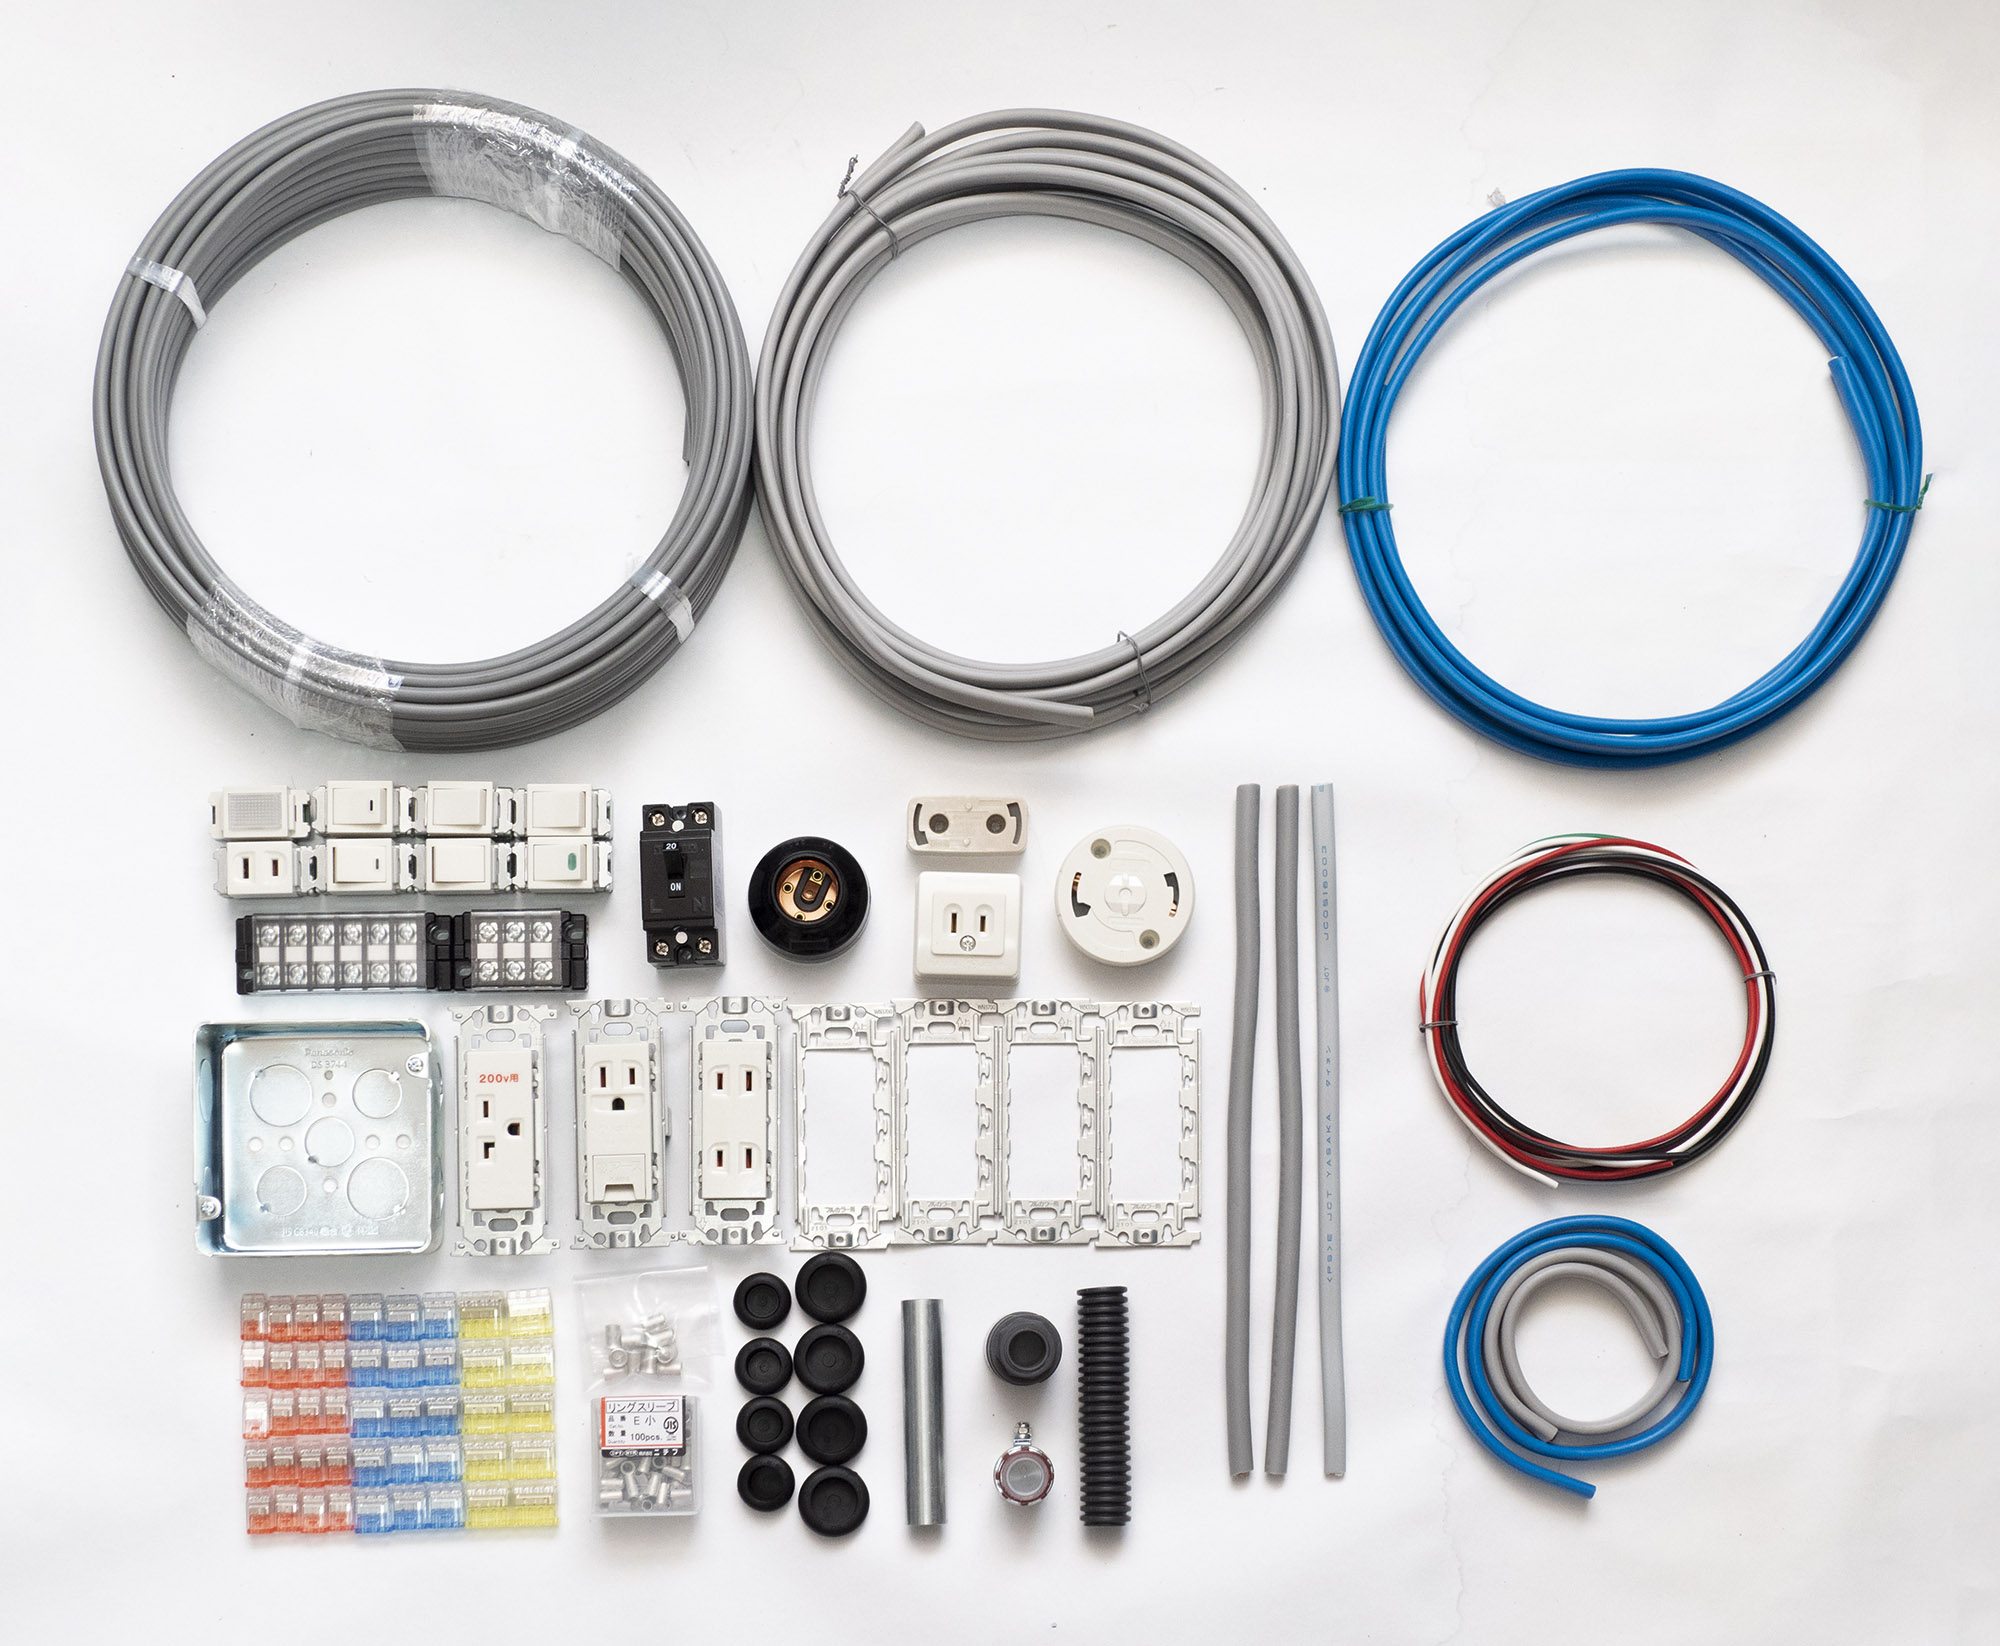 第ニ種電気工事士 技能試験対策 ケーブル、器具のセット